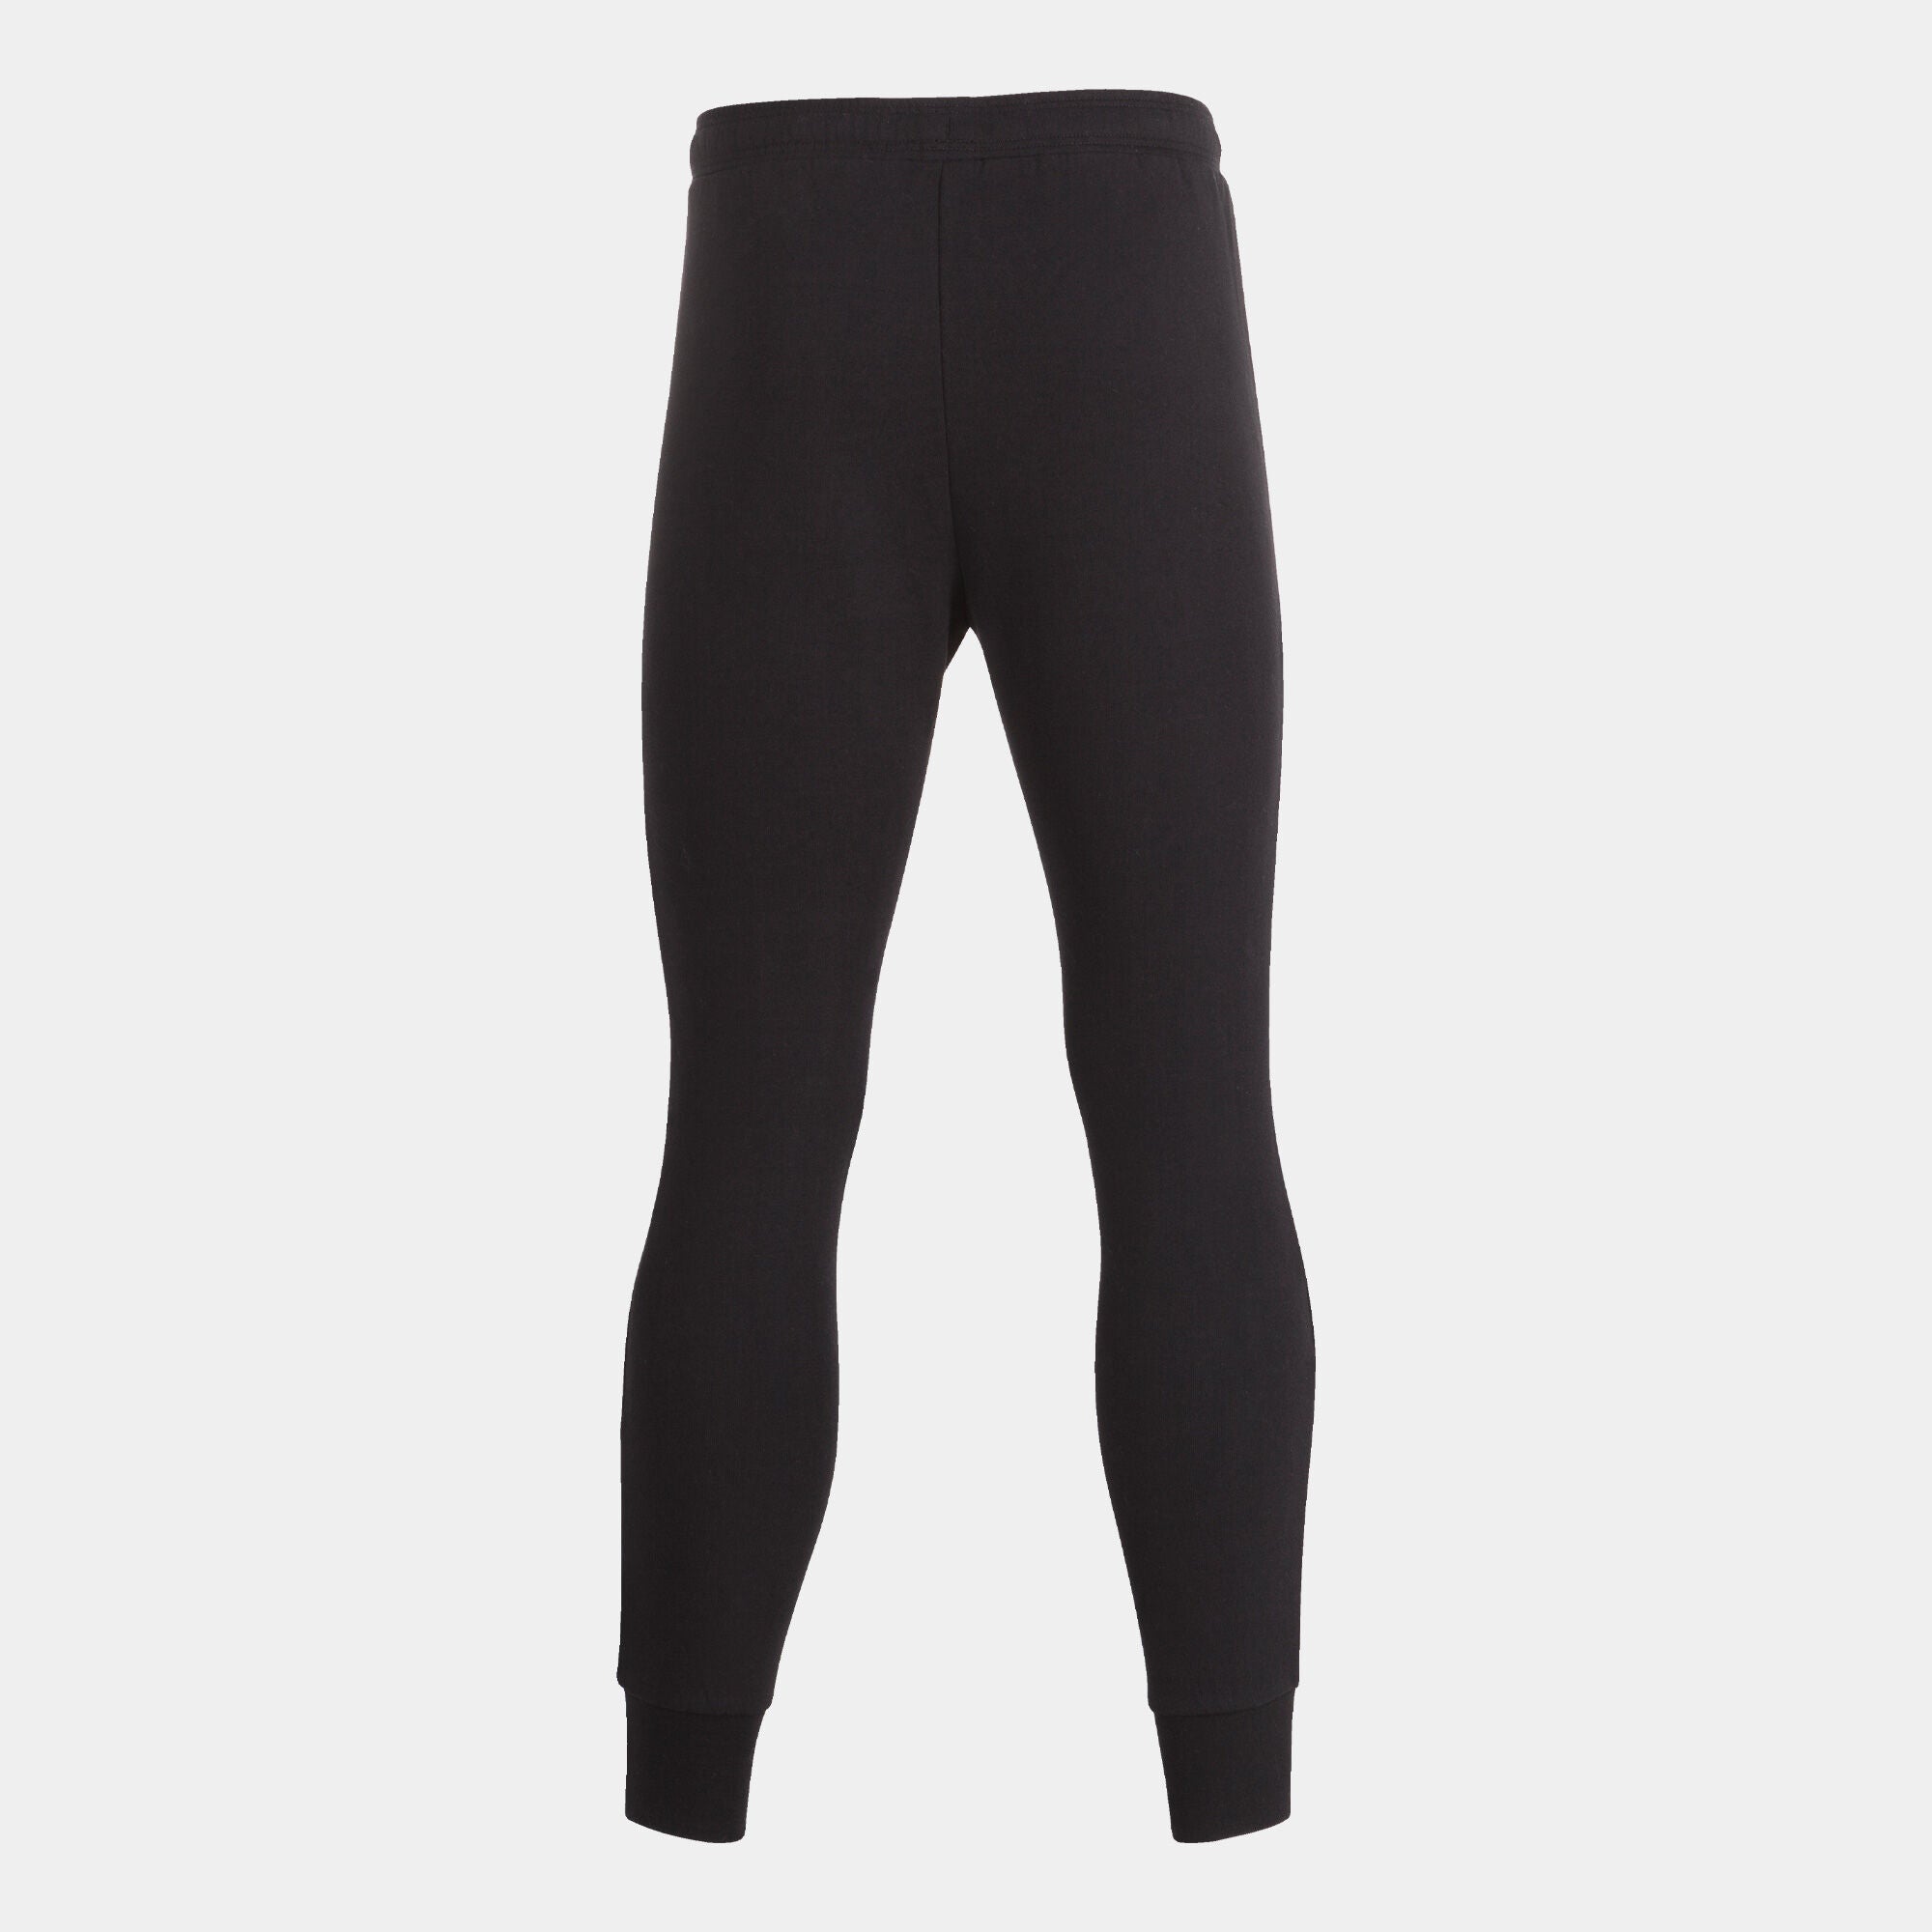 Joma Trouser For Men-MTRS-Black Grey